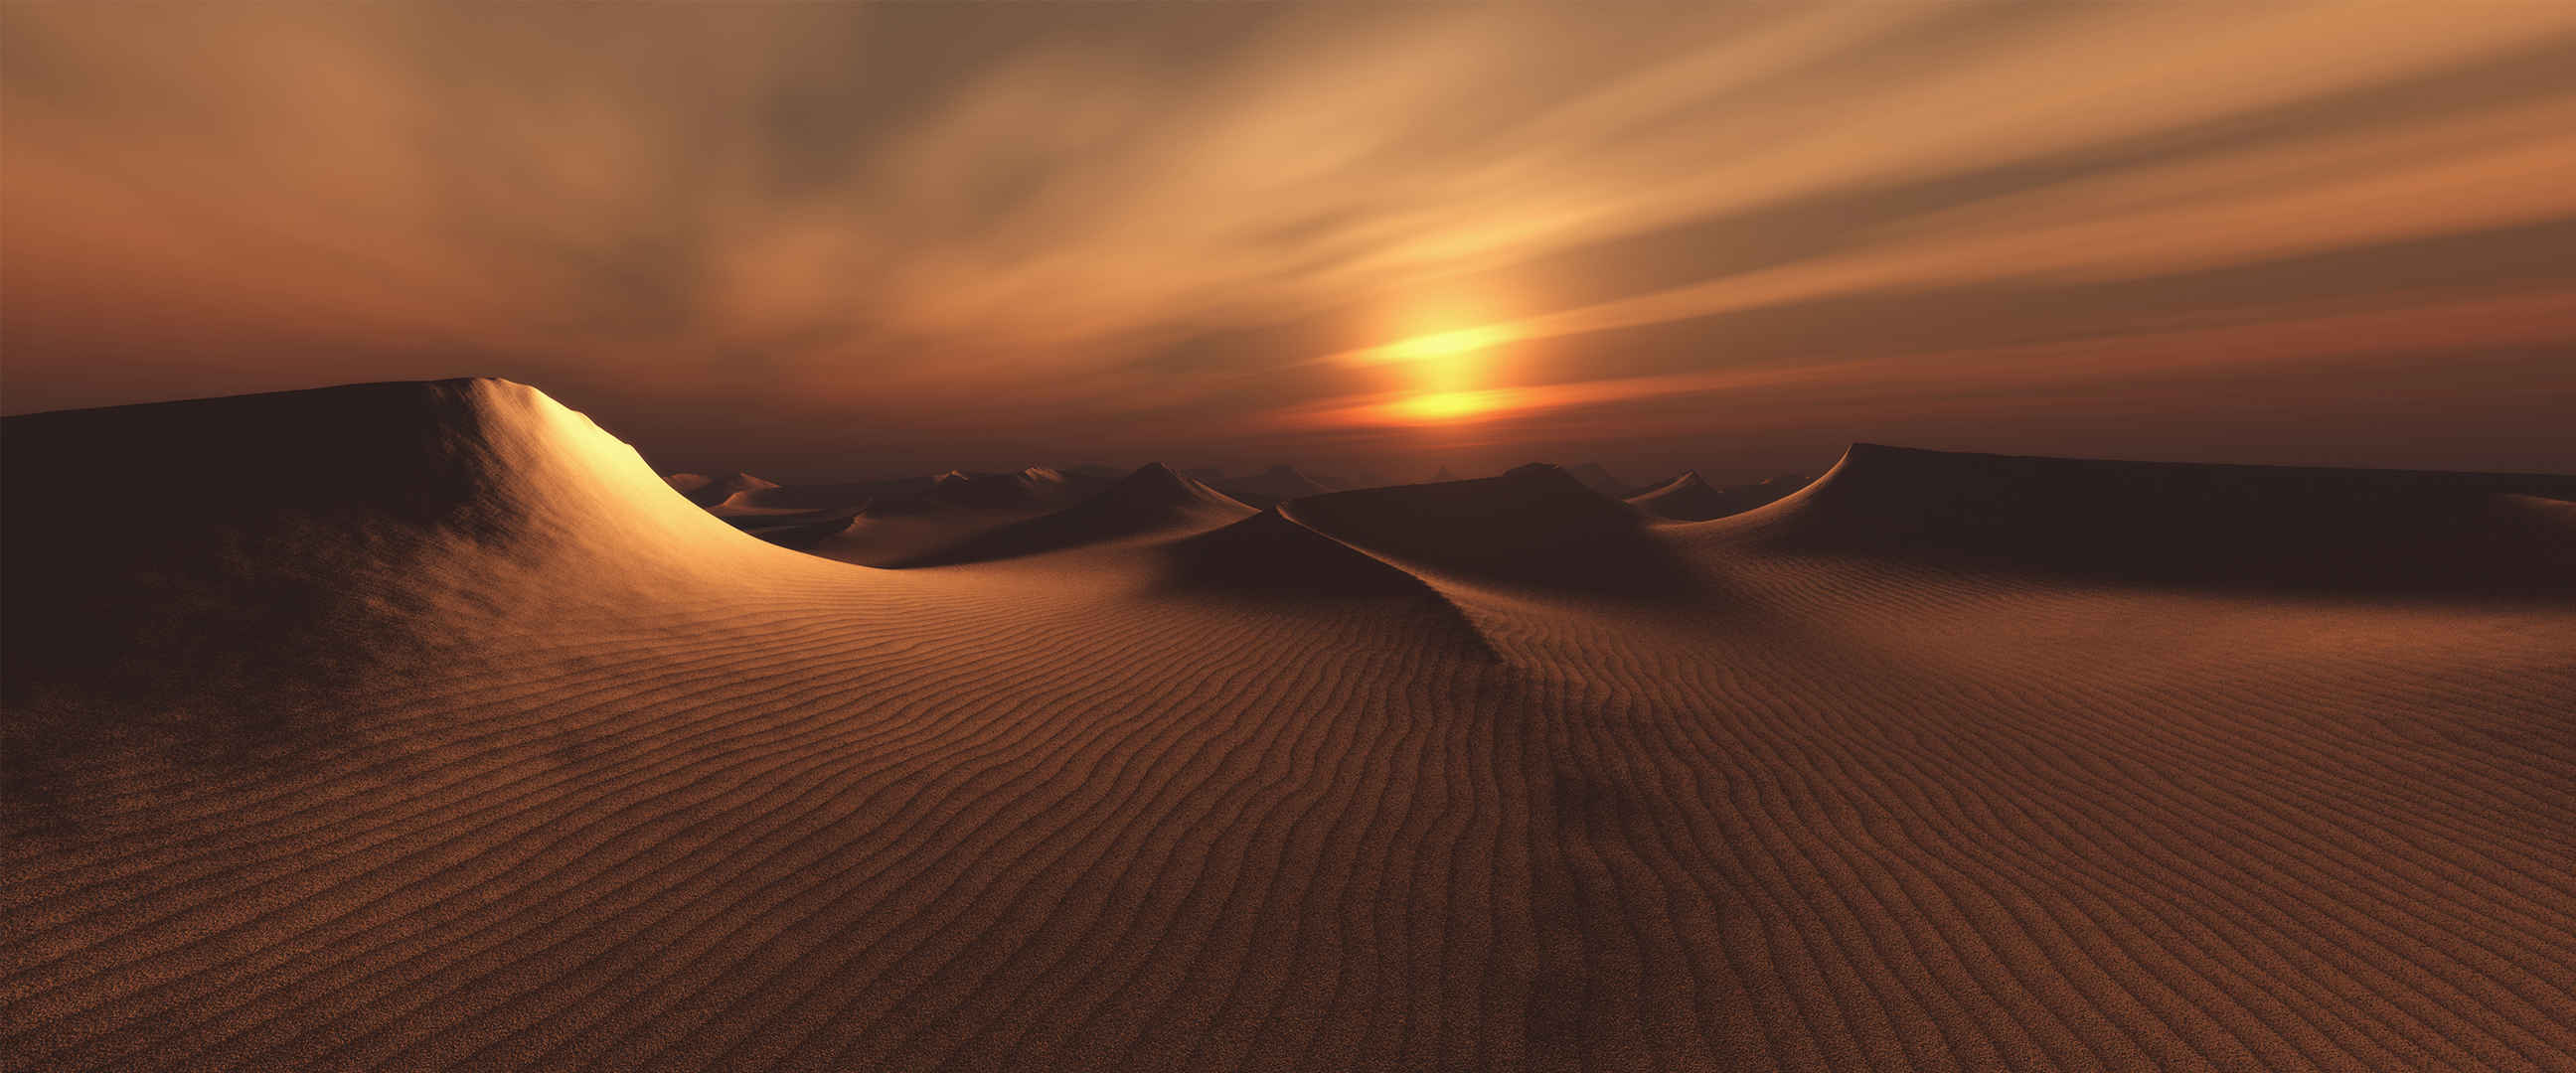 沙漠夕阳图片唯美-